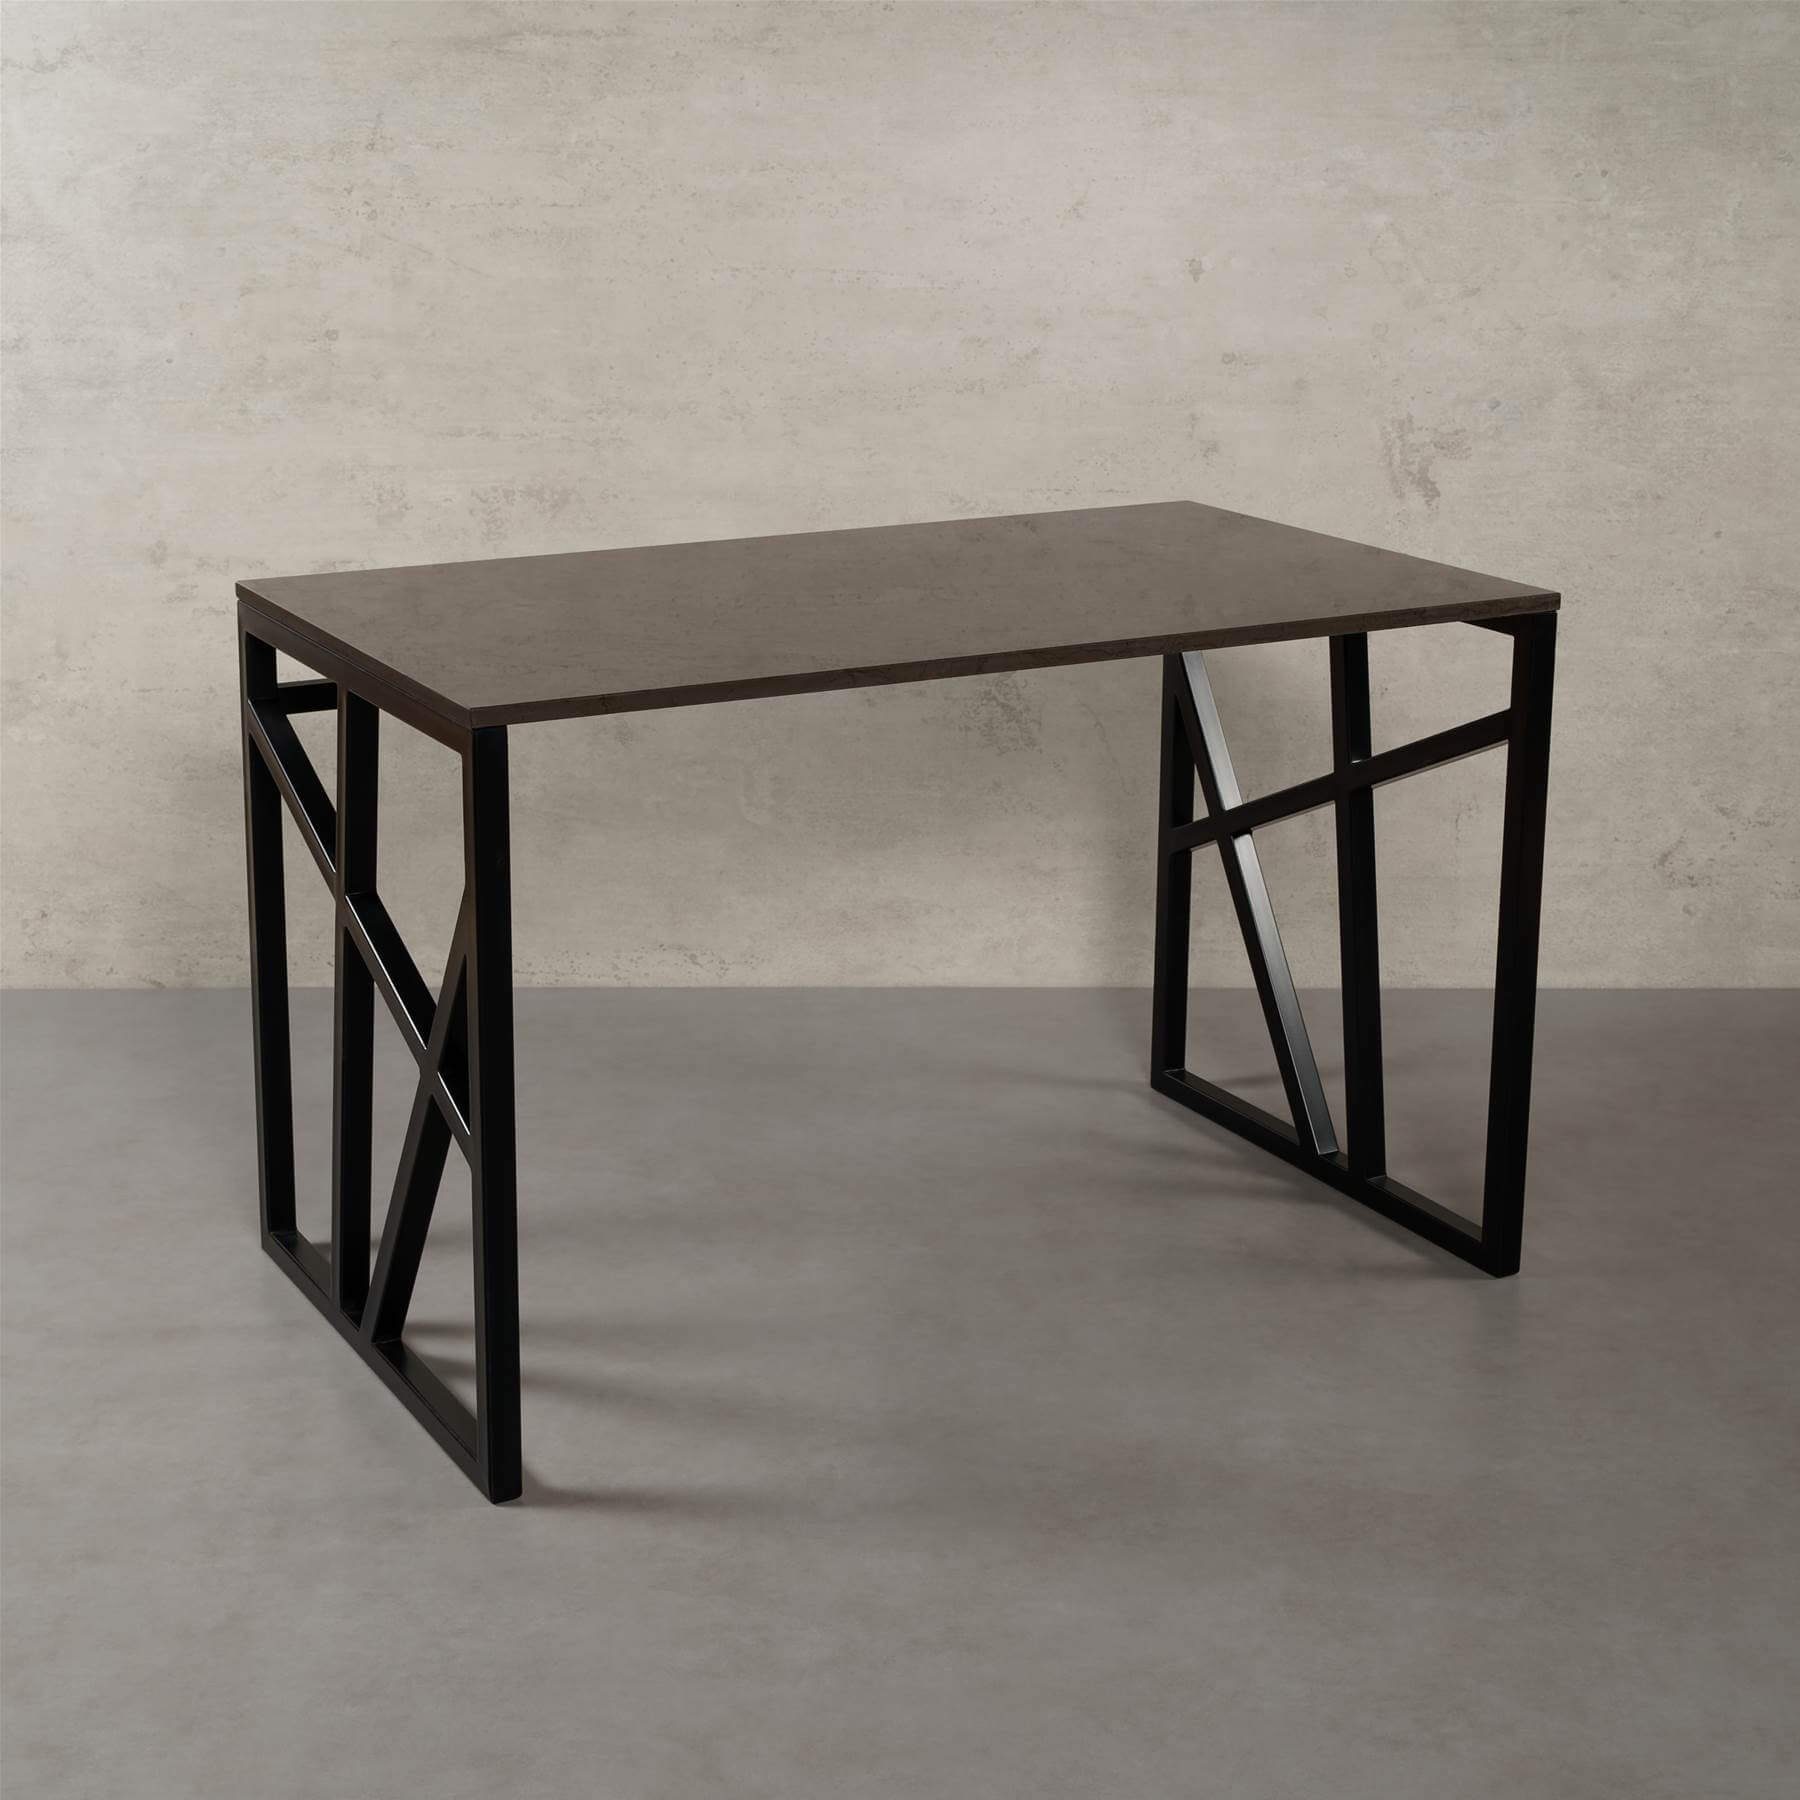 MAGNA Atelier Schreibtisch PITTSBURGH Schreibtisch mit ECHTEM MARMOR, Schreibtisch eckig, schwarz Metallgestell, 110cmx66cmx75cm Grigio Marquina